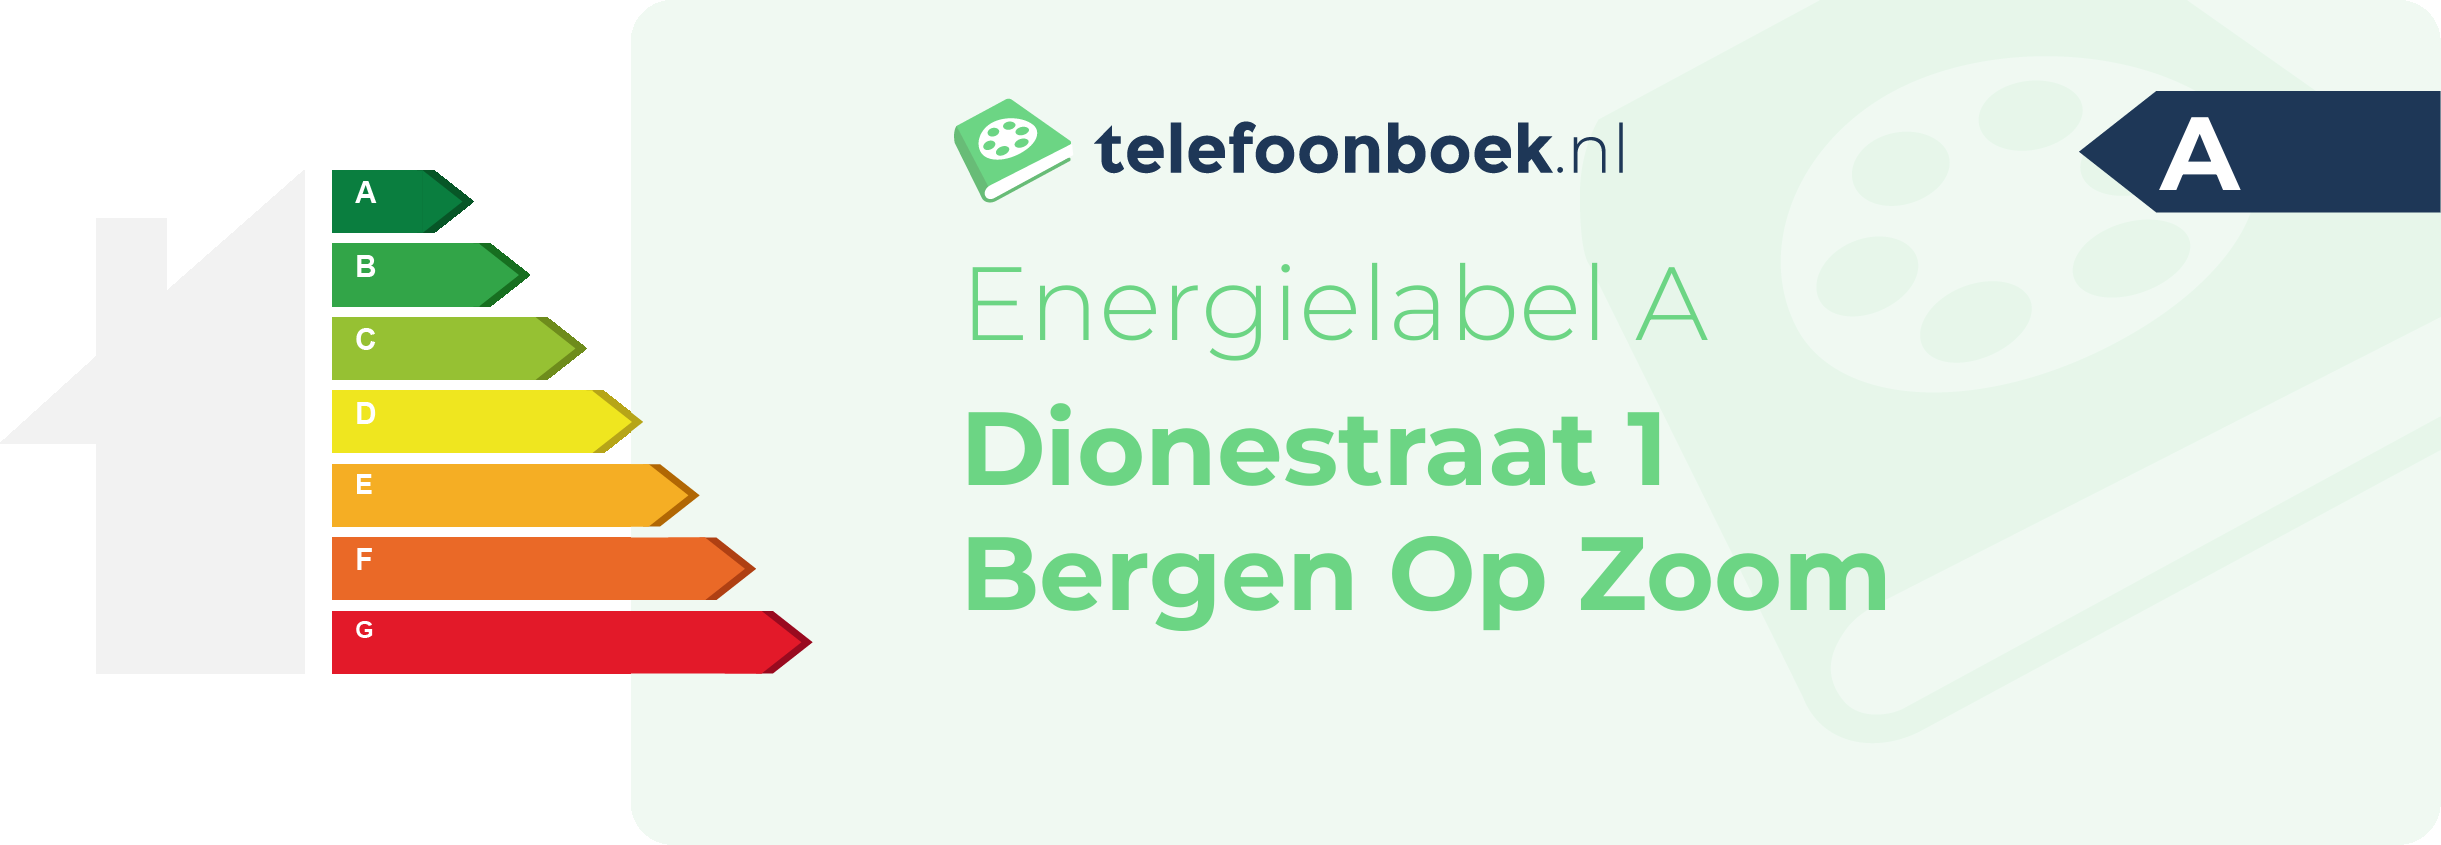 Energielabel Dionestraat 1 Bergen Op Zoom